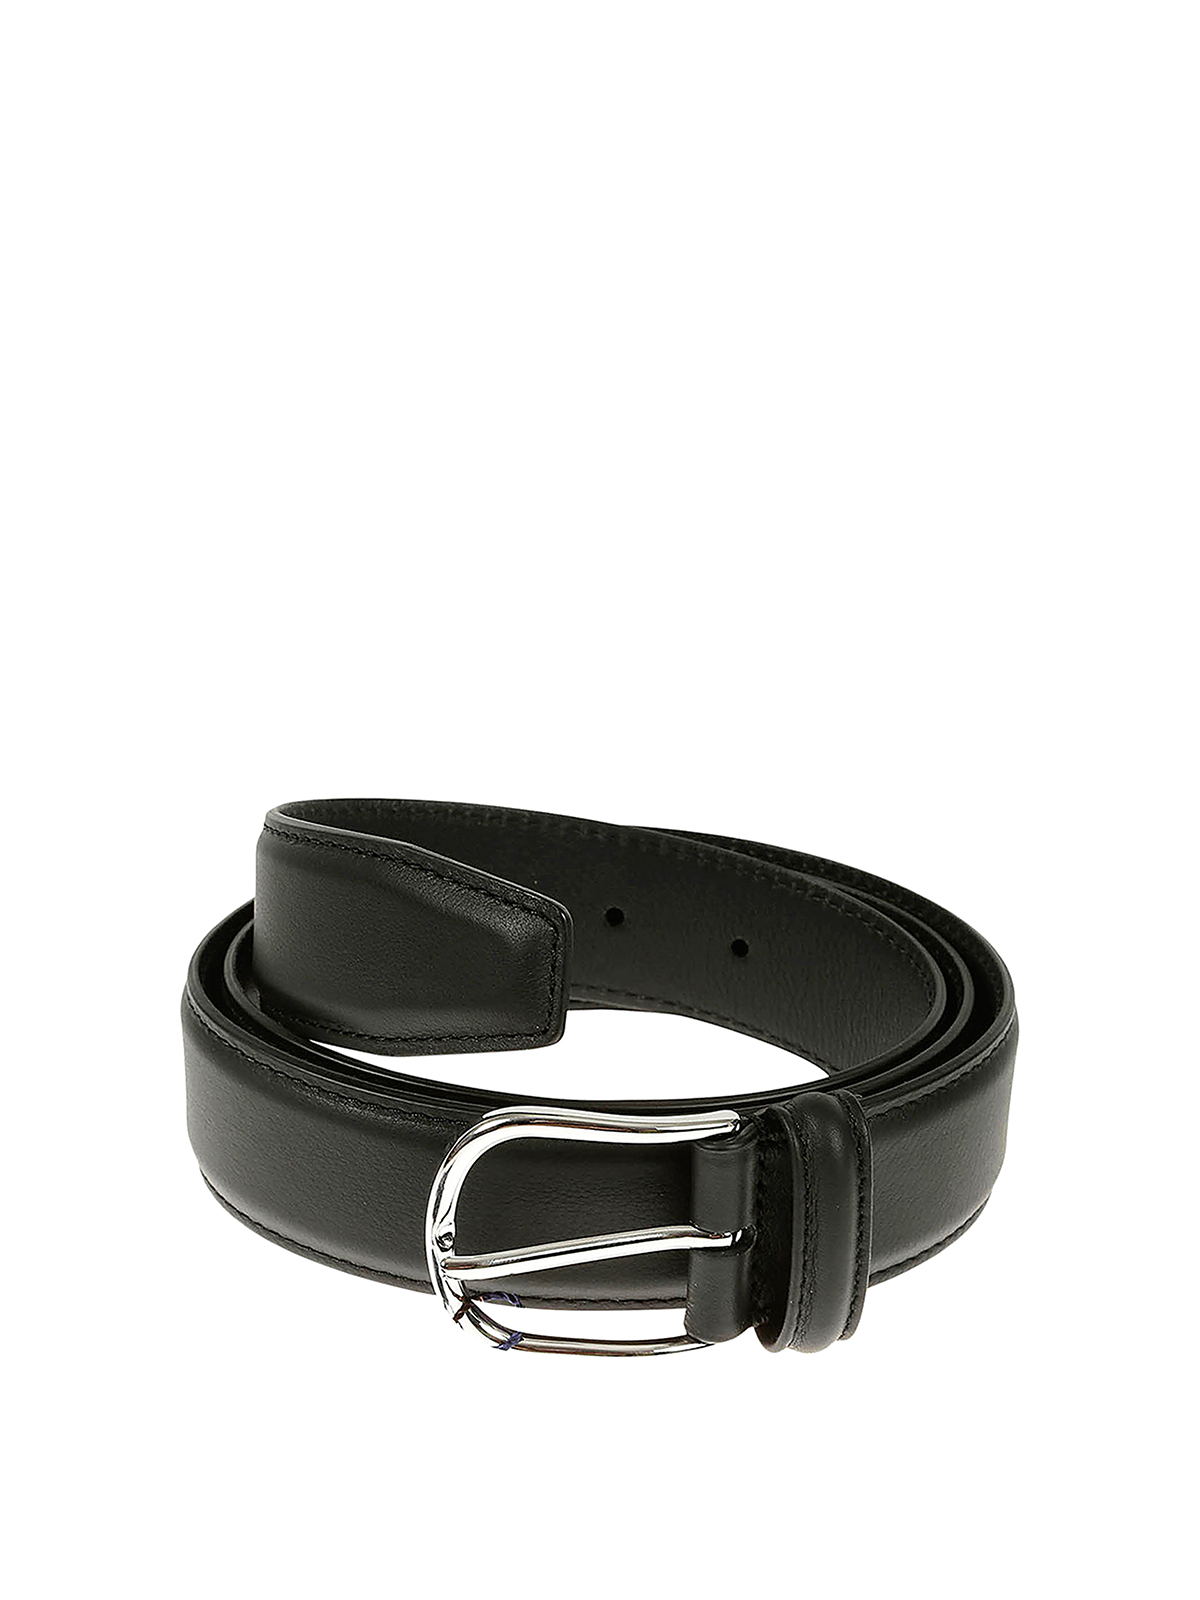 Belts Anderson's - Belt - 0890PL18AF281711N1 | Shop online at THEBS